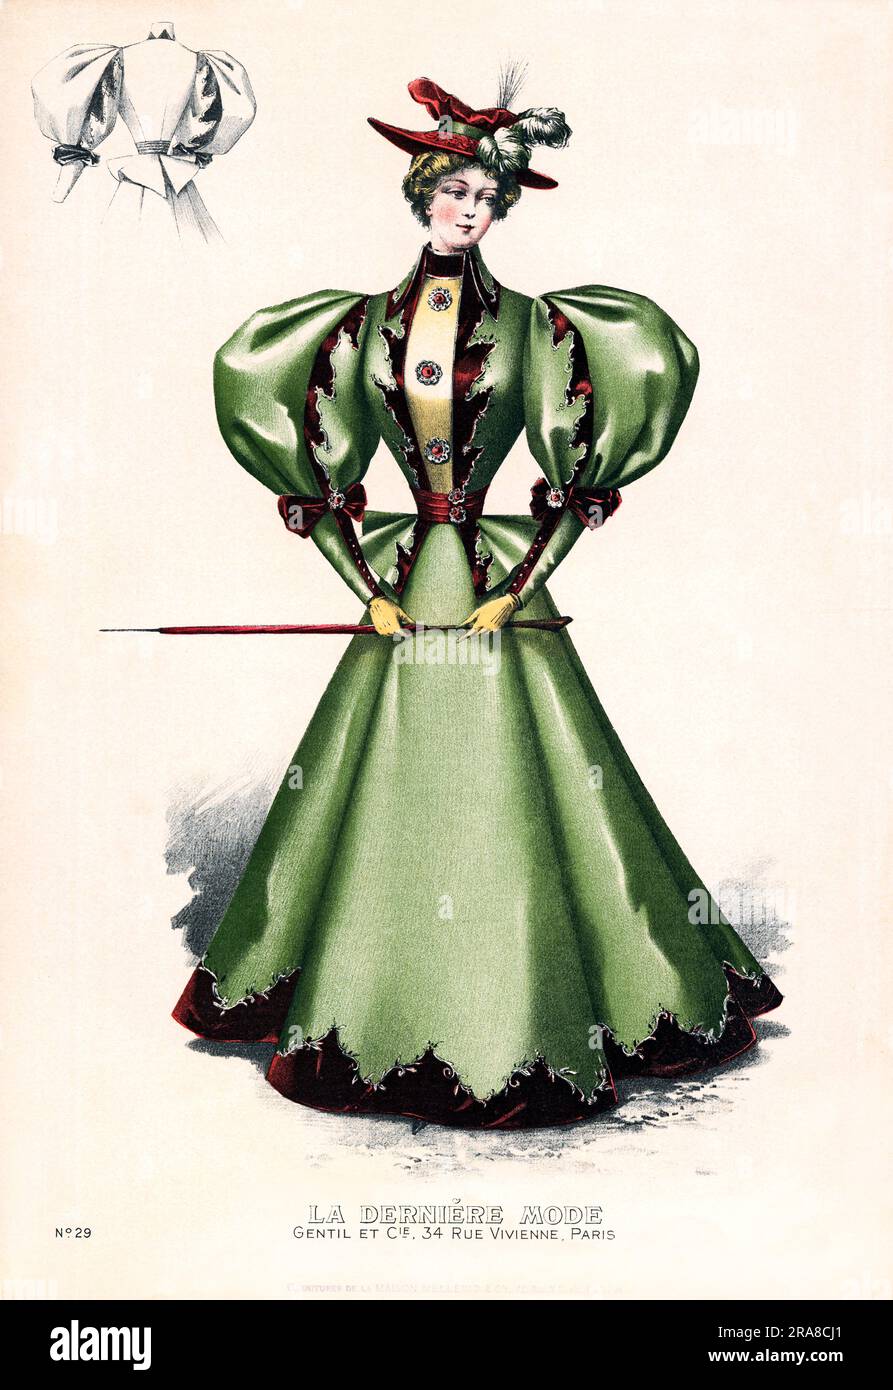 Paris, France: 1876 Une impression lithographique d'une femme à la mode faisant de la publicité 'la Derniere mode' (la dernière mode) à Gentil et Cie au 34 rue Vivienne. Banque D'Images